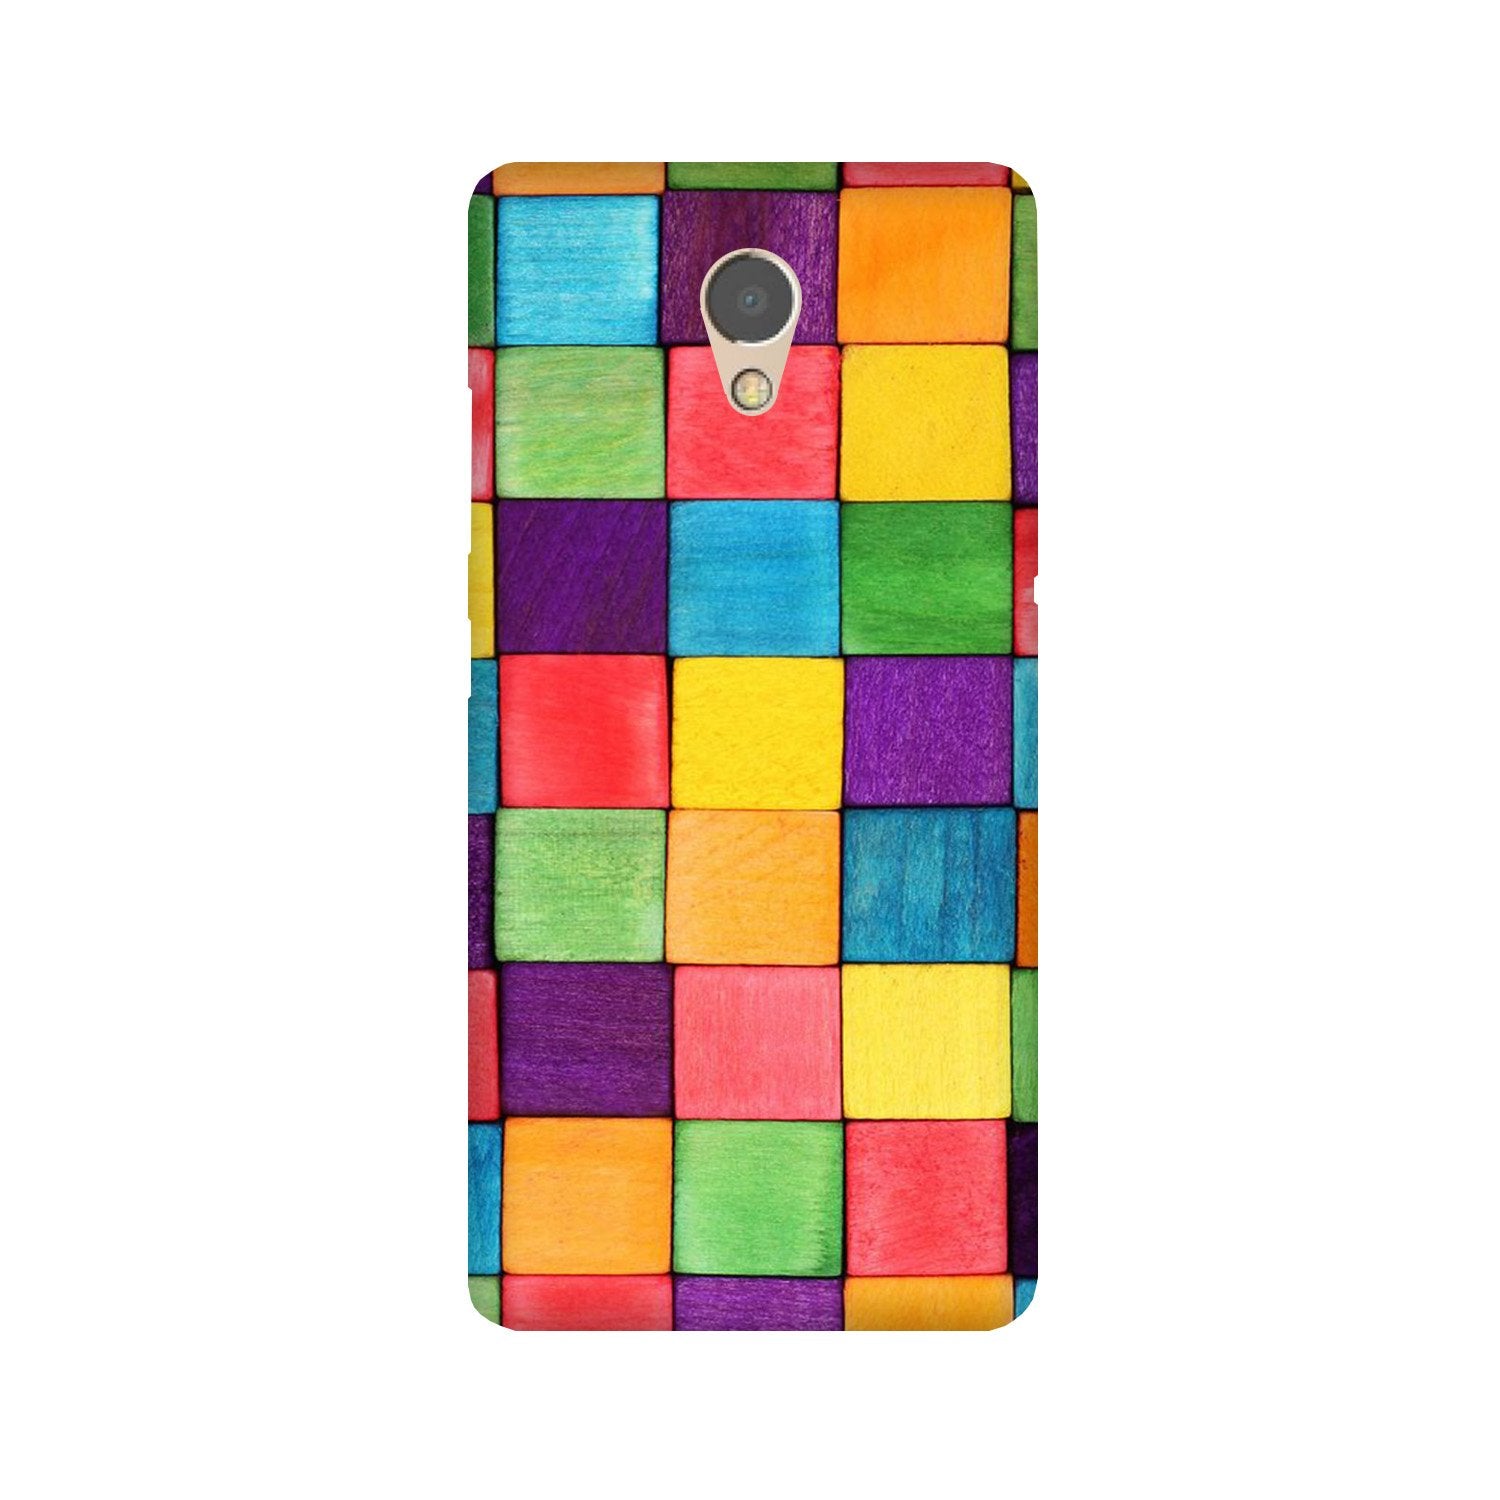 Colorful Square Case for Lenovo P2 (Design No. 218)